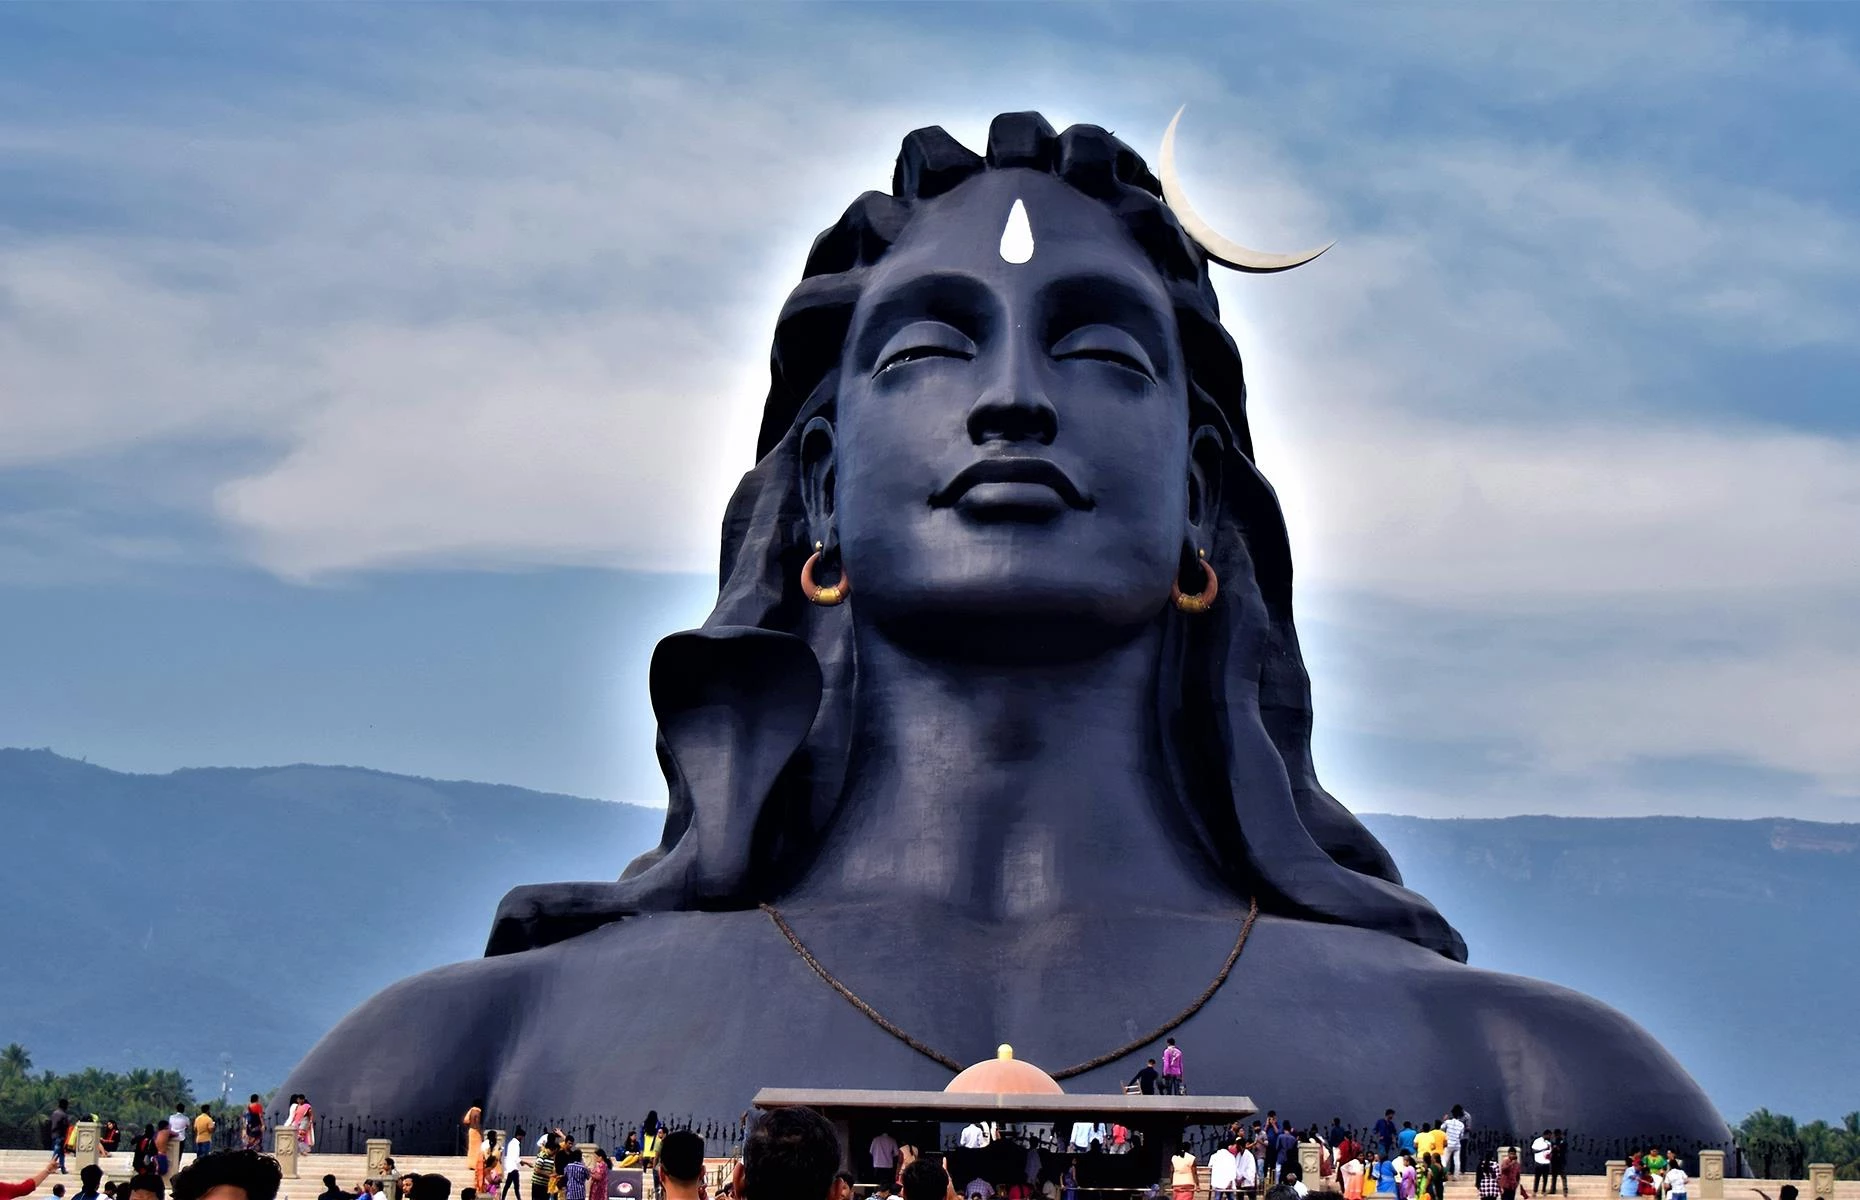 Adiyogi Shiva, Booluvampatti, Ấn Độ: Bức tượng vị thần Hindu Shiva cao 34 m đã được tổ chức Kỷ lục Guinness thế giới công nhận là tác phẩm điêu khắc tượng bán thân lớn nhất thế giới. Nằm ở bang Tamil Nadu của Ấn Độ, tác phẩm nhằm mục đích truyền cảm hứng và thúc đẩy môn yoga. Tên gọi bức tượng Adiyogi có nghĩa là yogi đầu tiên, bởi vì Shiva được biết đến là người khởi xướng yoga. Ảnh: Creativecouplestudio.